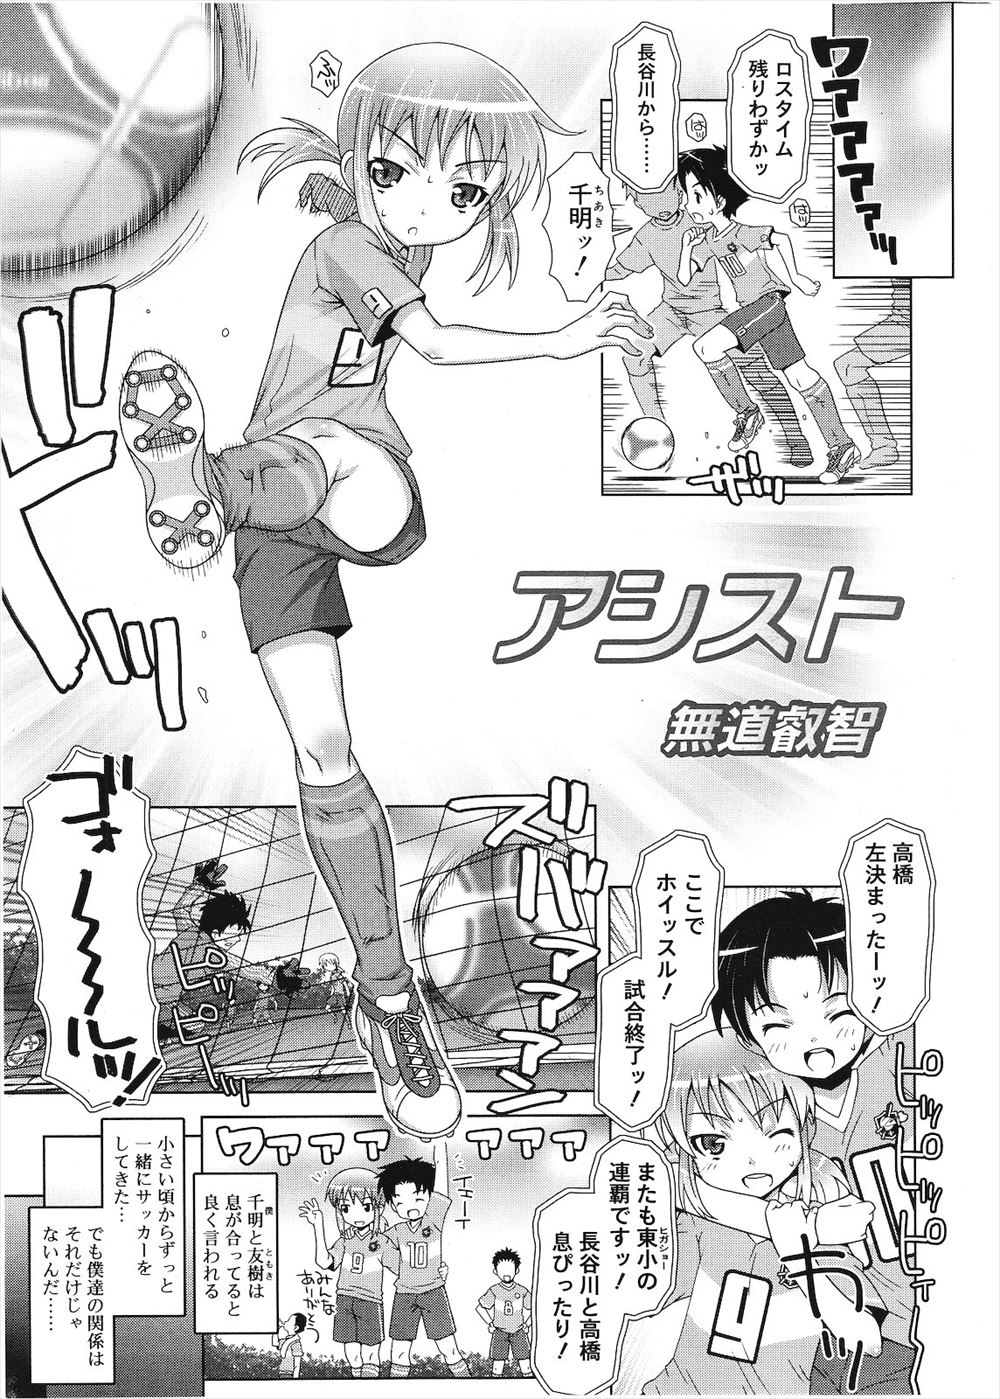 【エロ漫画】サッカーで息ぴったりのFW二人組ショタ男の娘、試合後はもっこりスケスケランジェリーで女装し合って騎乗位アナルナマ挿入で中出しプレイするおホモだちw